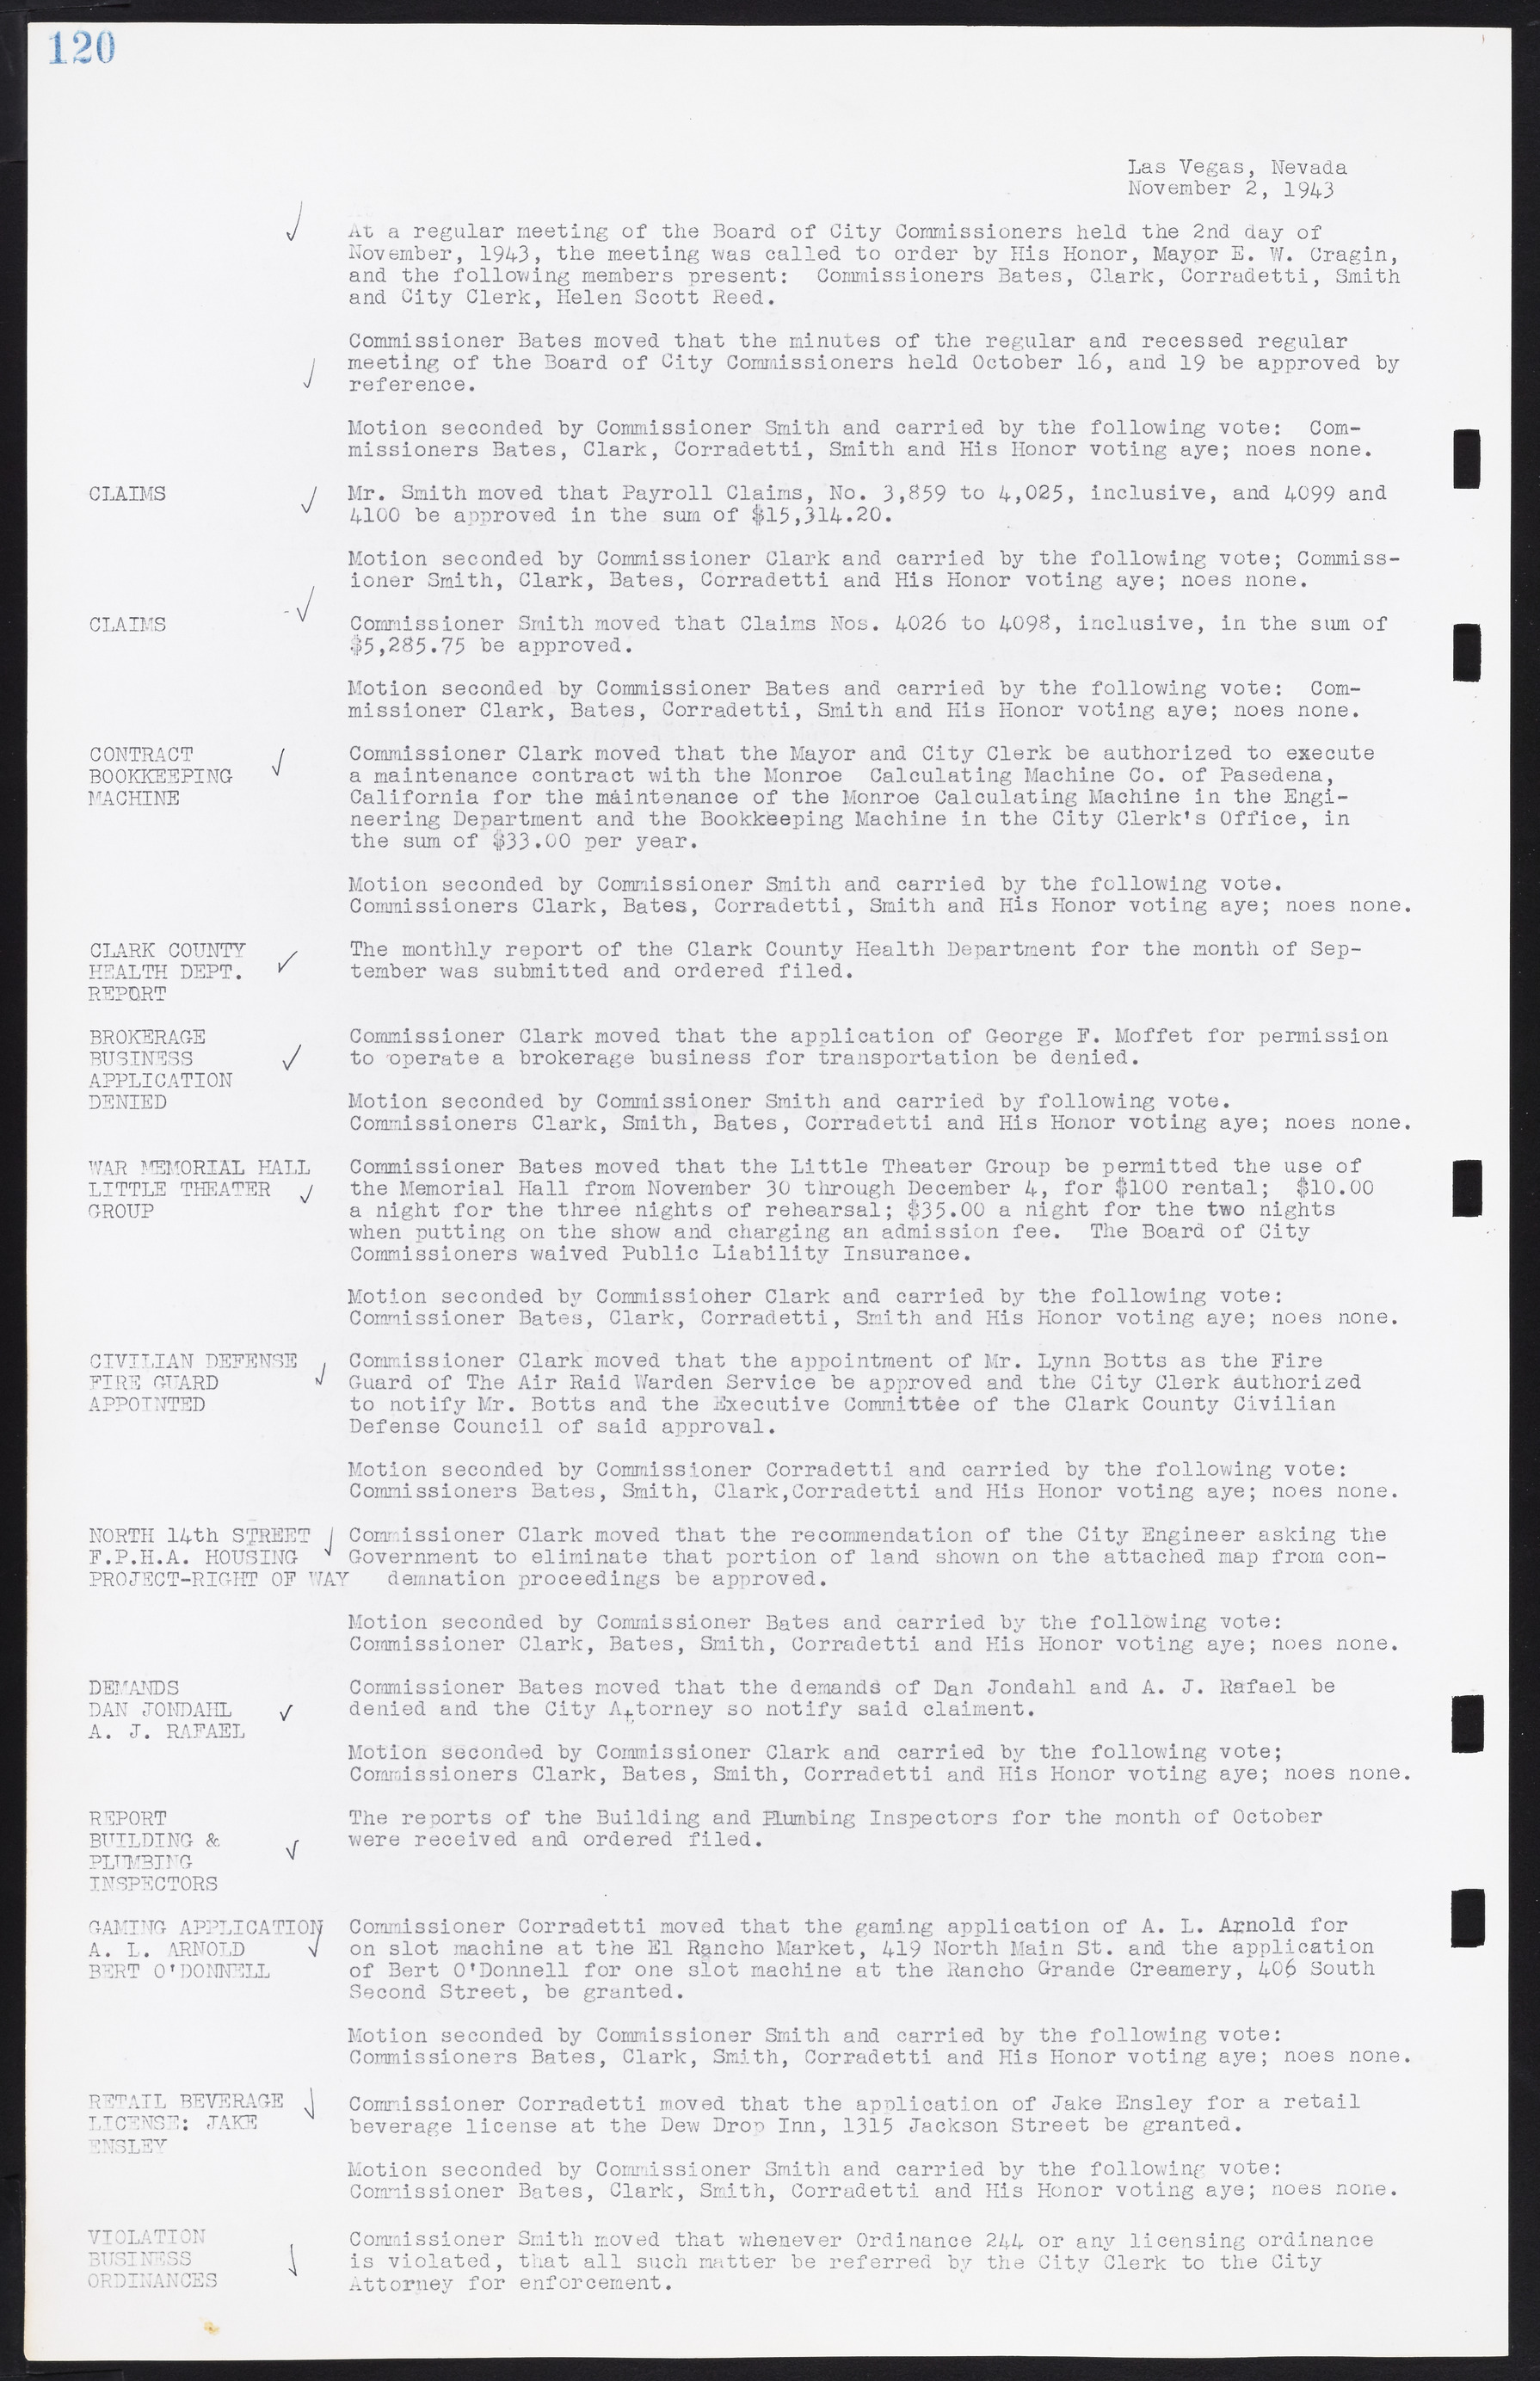 Las Vegas City Commission Minutes, August 11, 1942 to December 30, 1946, lvc000005-134